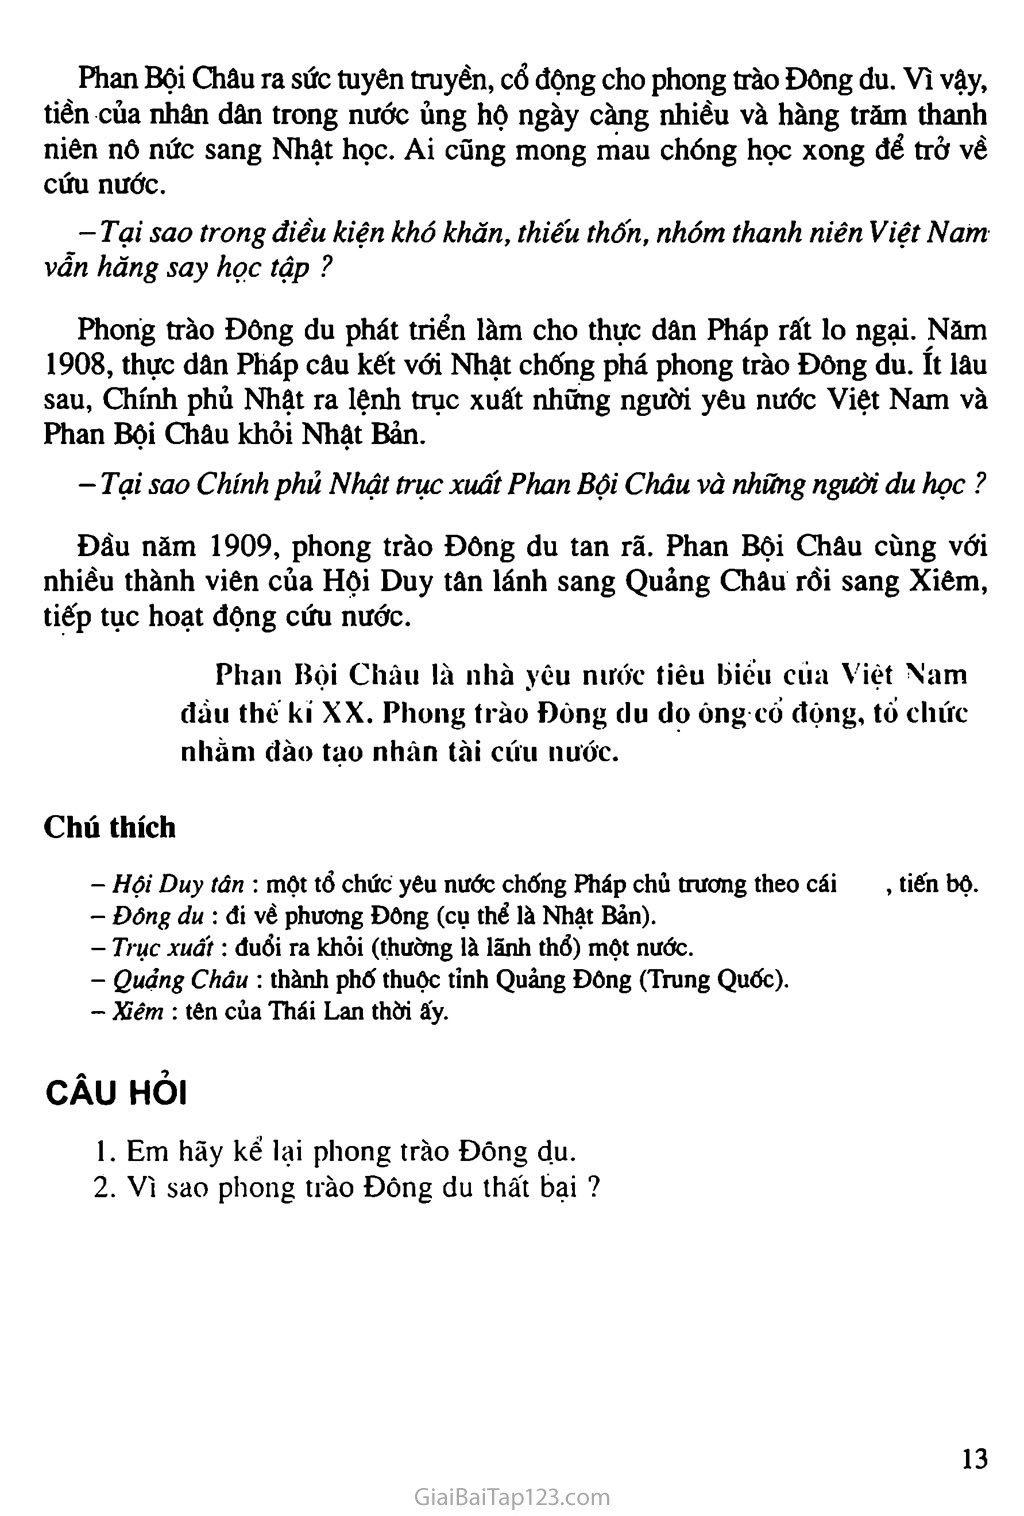 Bài 5. Phan Bội Châu và phong trào Đông du trang 2